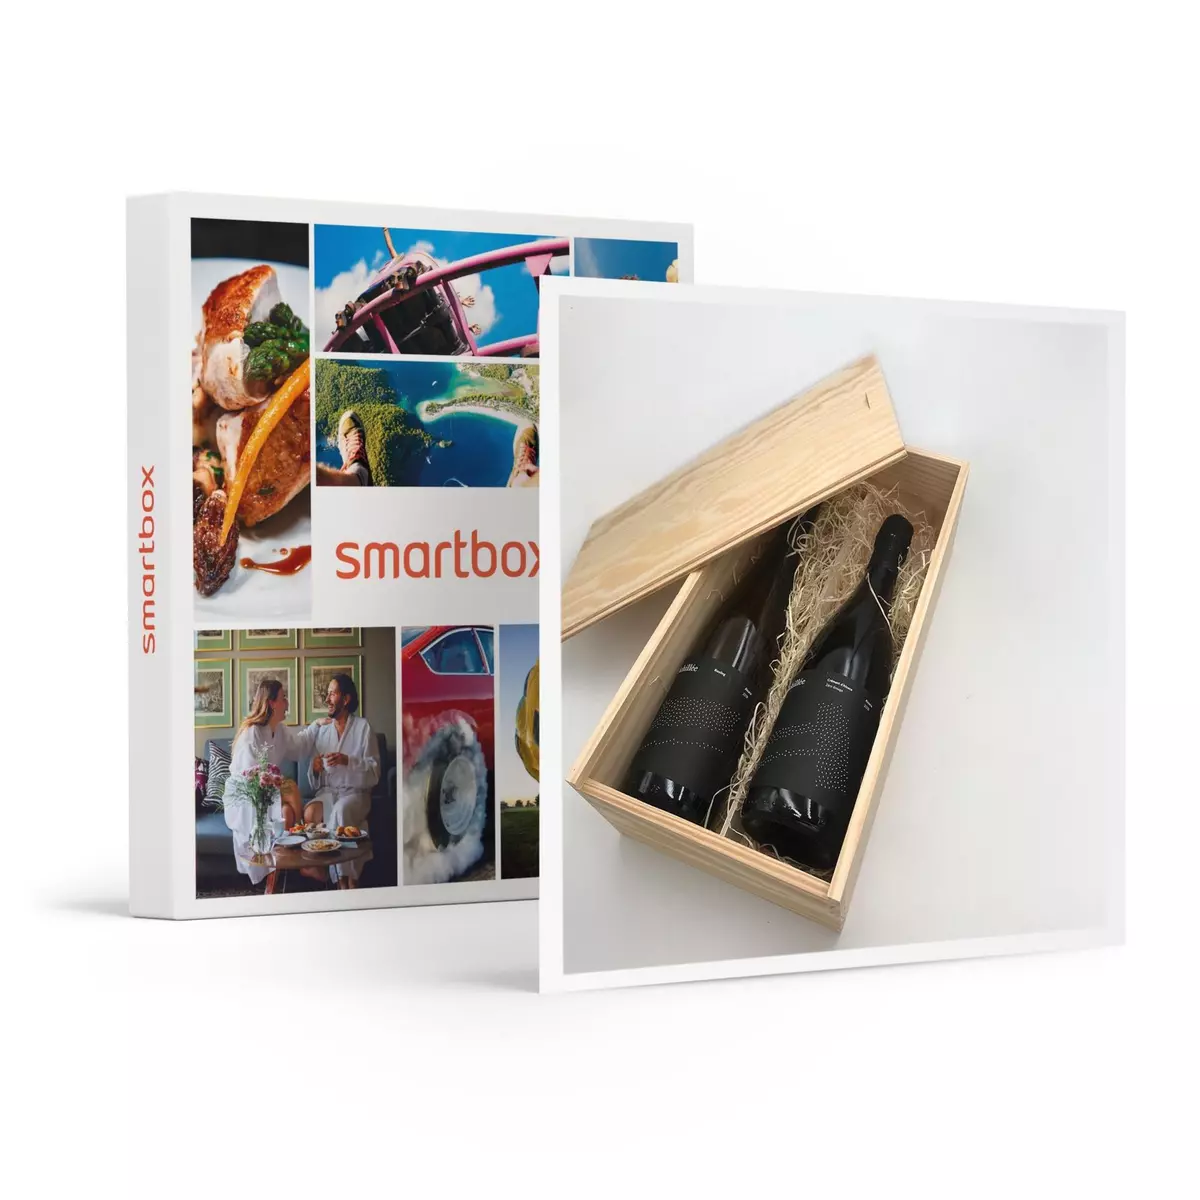 Smartbox Coffret de 2 bouteilles de vin biodynamique et naturel à domicile - Coffret Cadeau Gastronomie